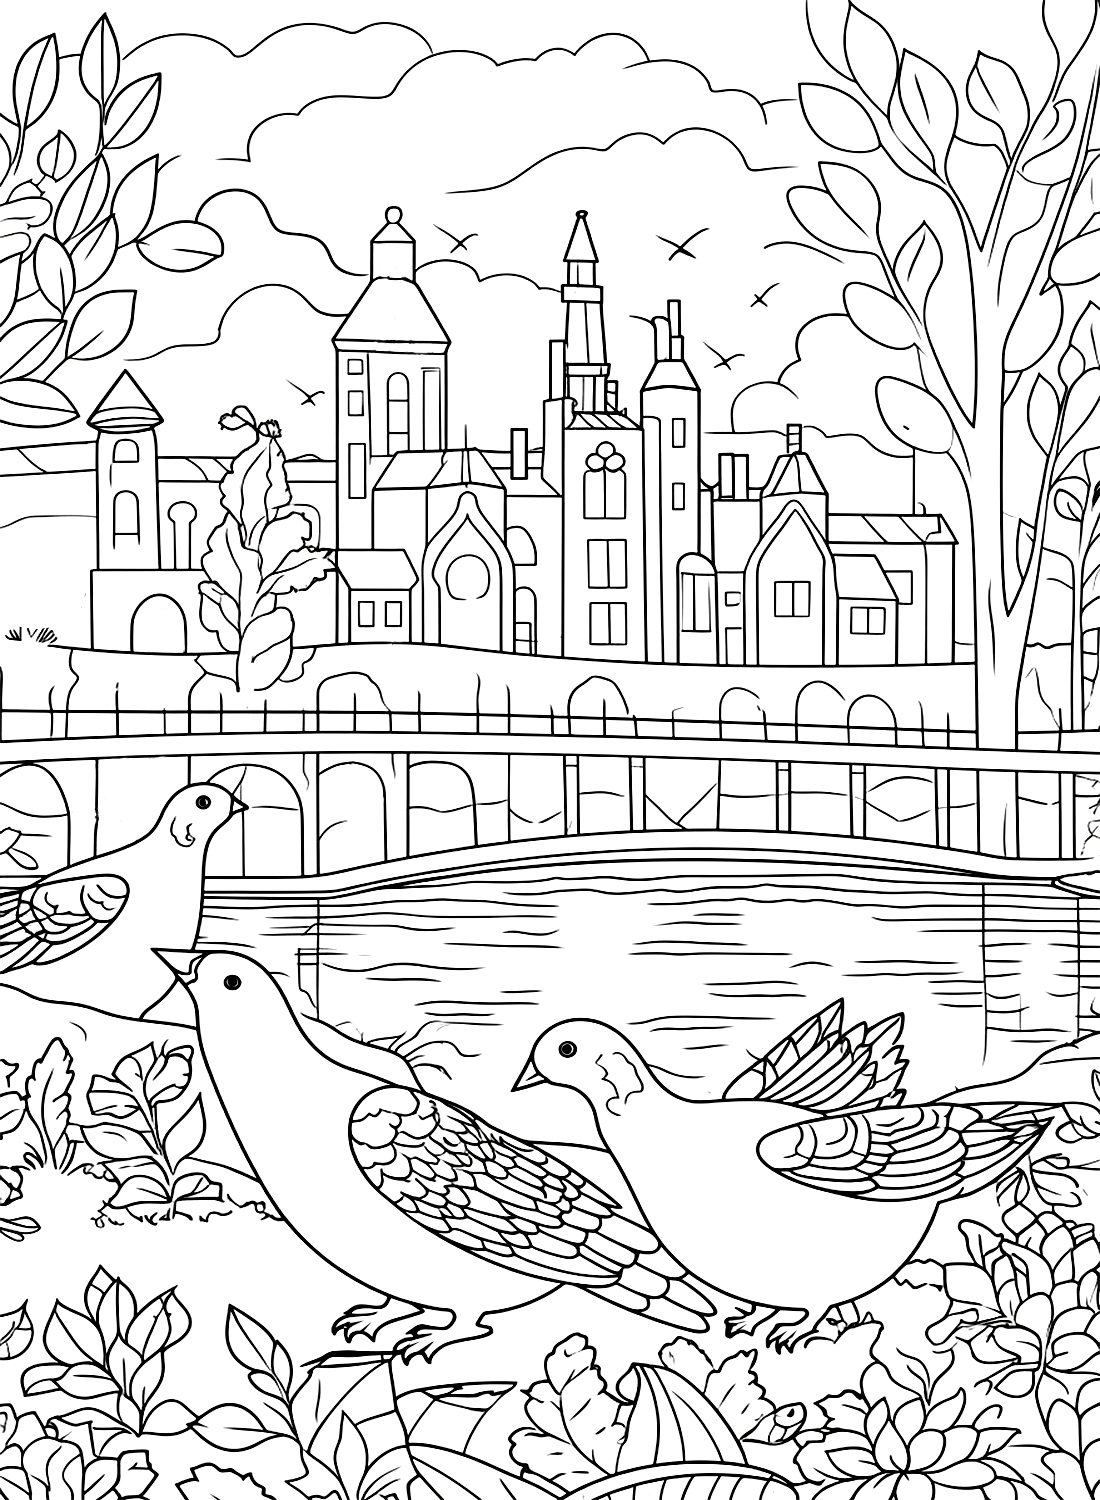 Tauben in einem Stadtpark von Pigeon